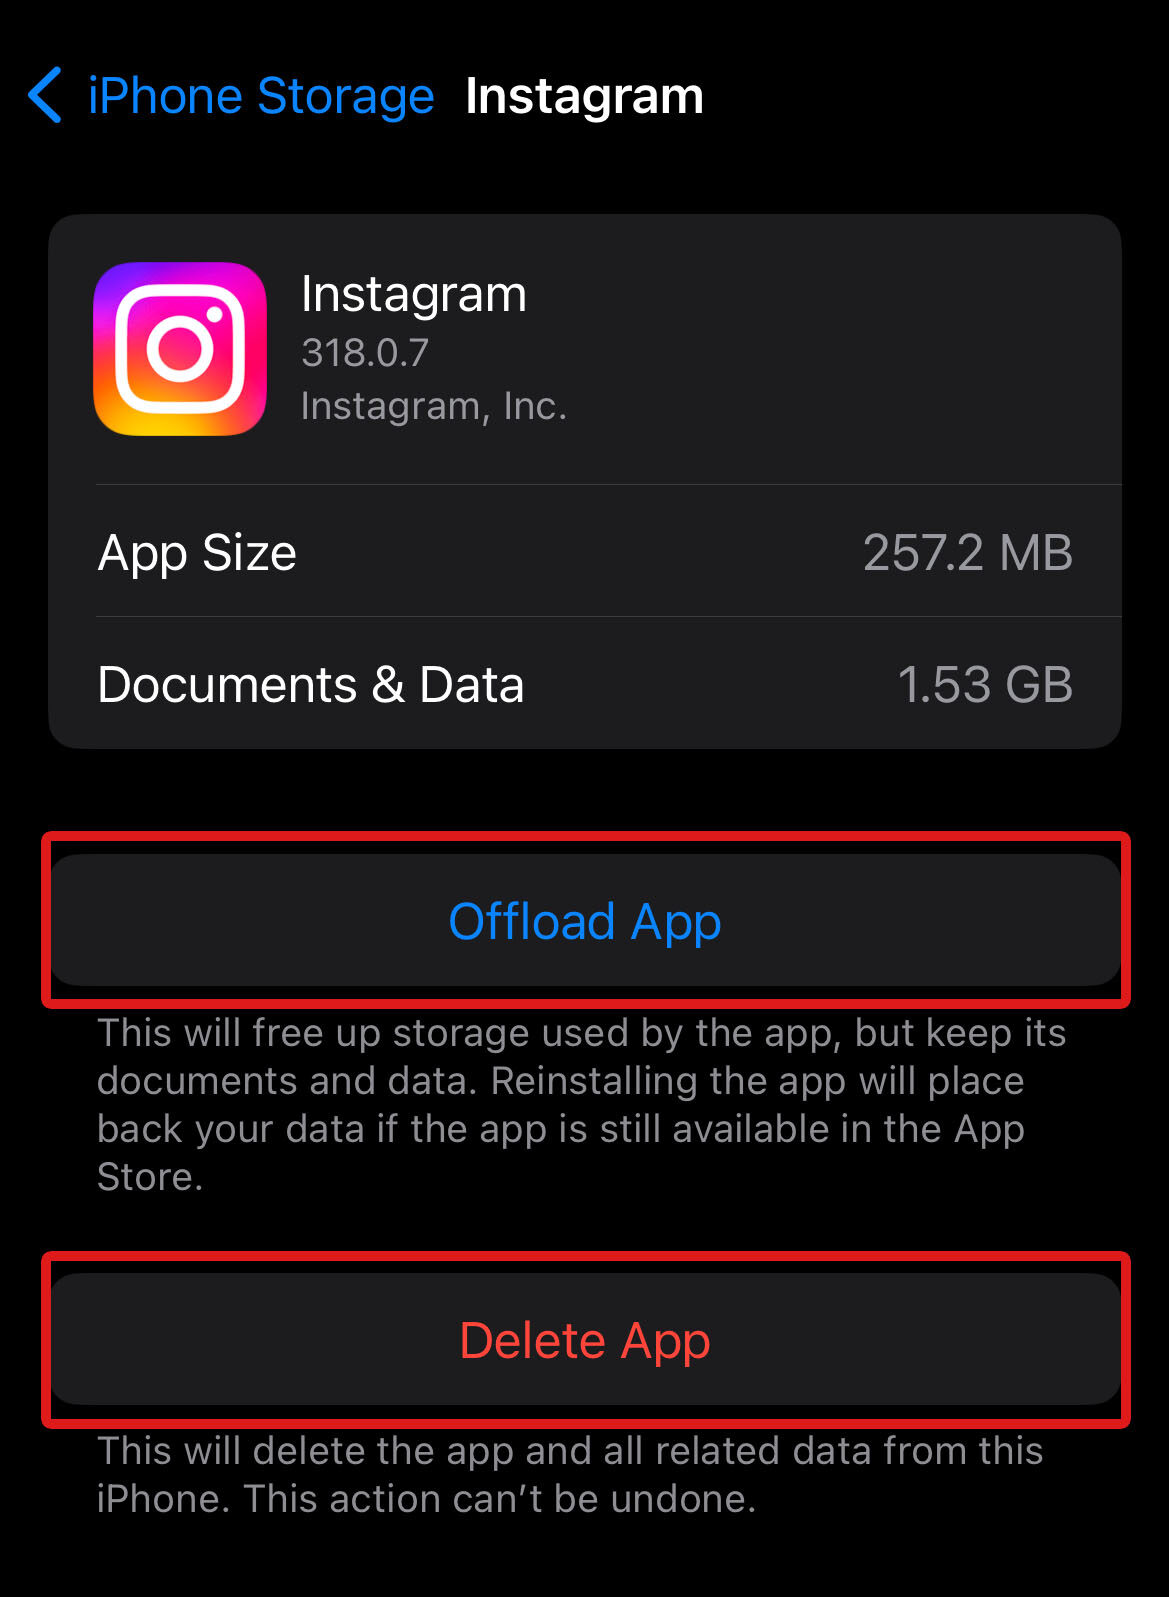 Delete or Offload App